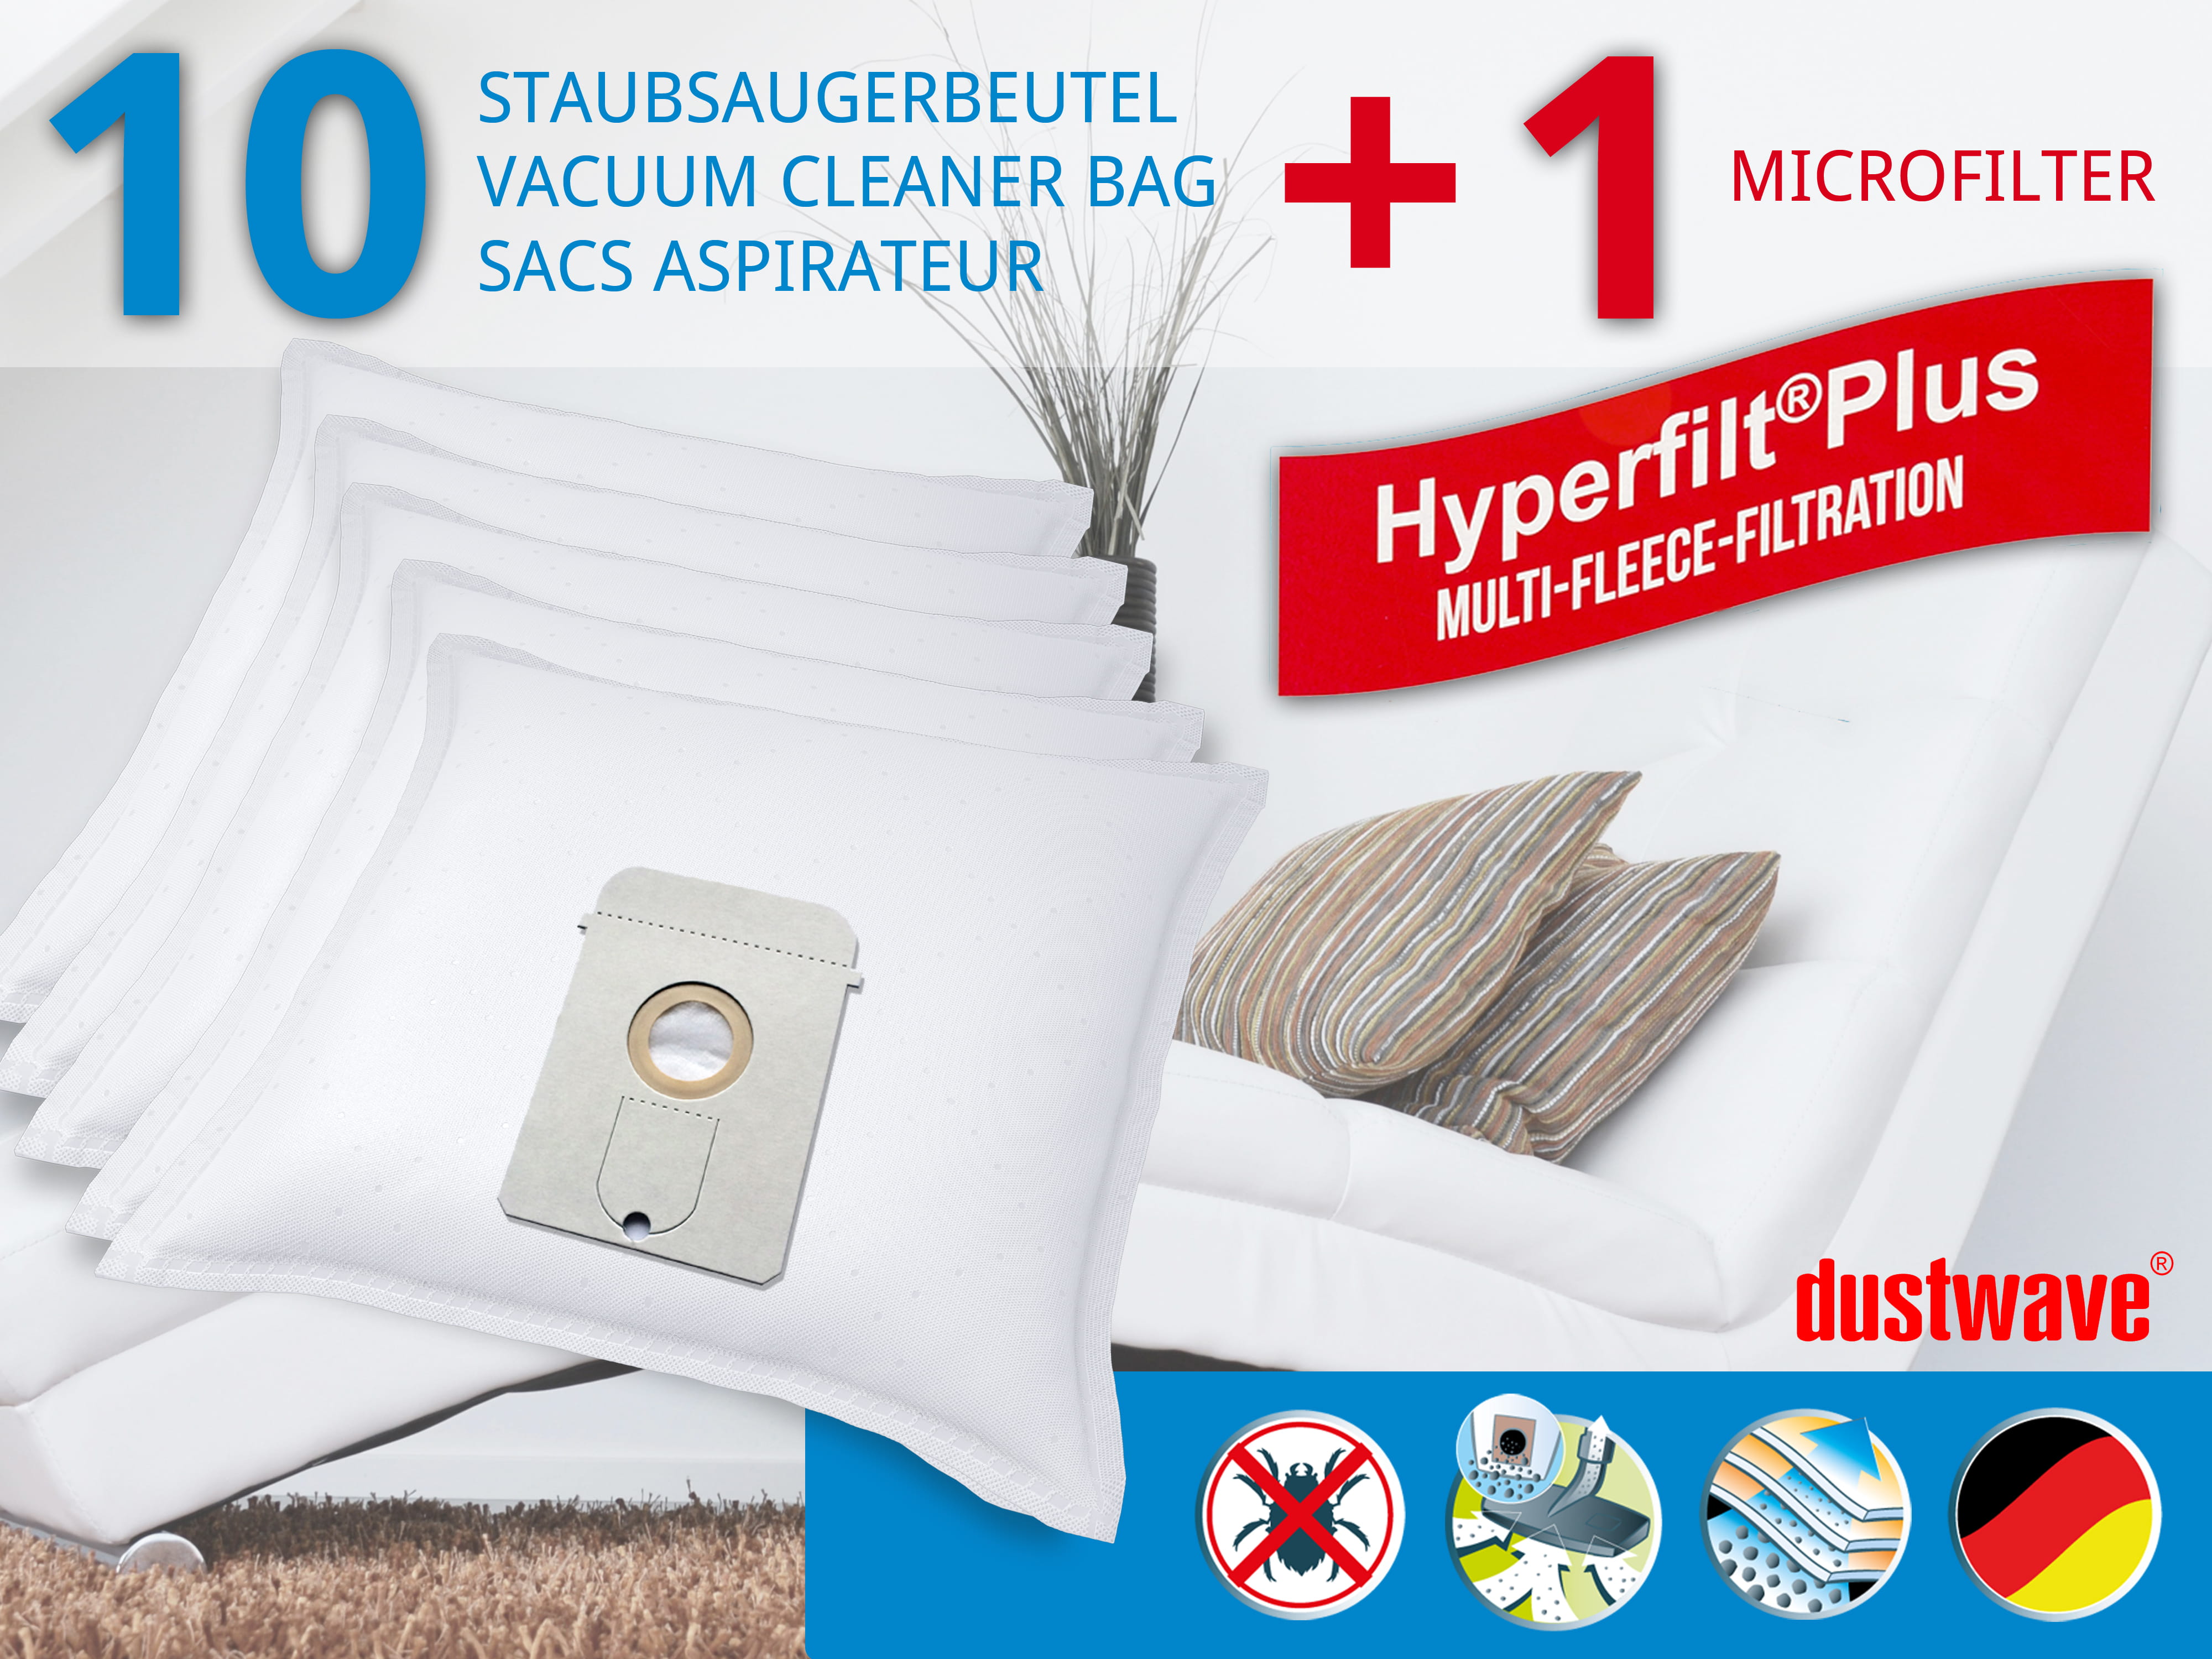 Dustwave® 10 Staubsaugerbeutel für AEG Vampyr 6600 Electronic - hocheffizient, mehrlagiges Mikrovlies mit Hygieneverschluss - Made in Germany